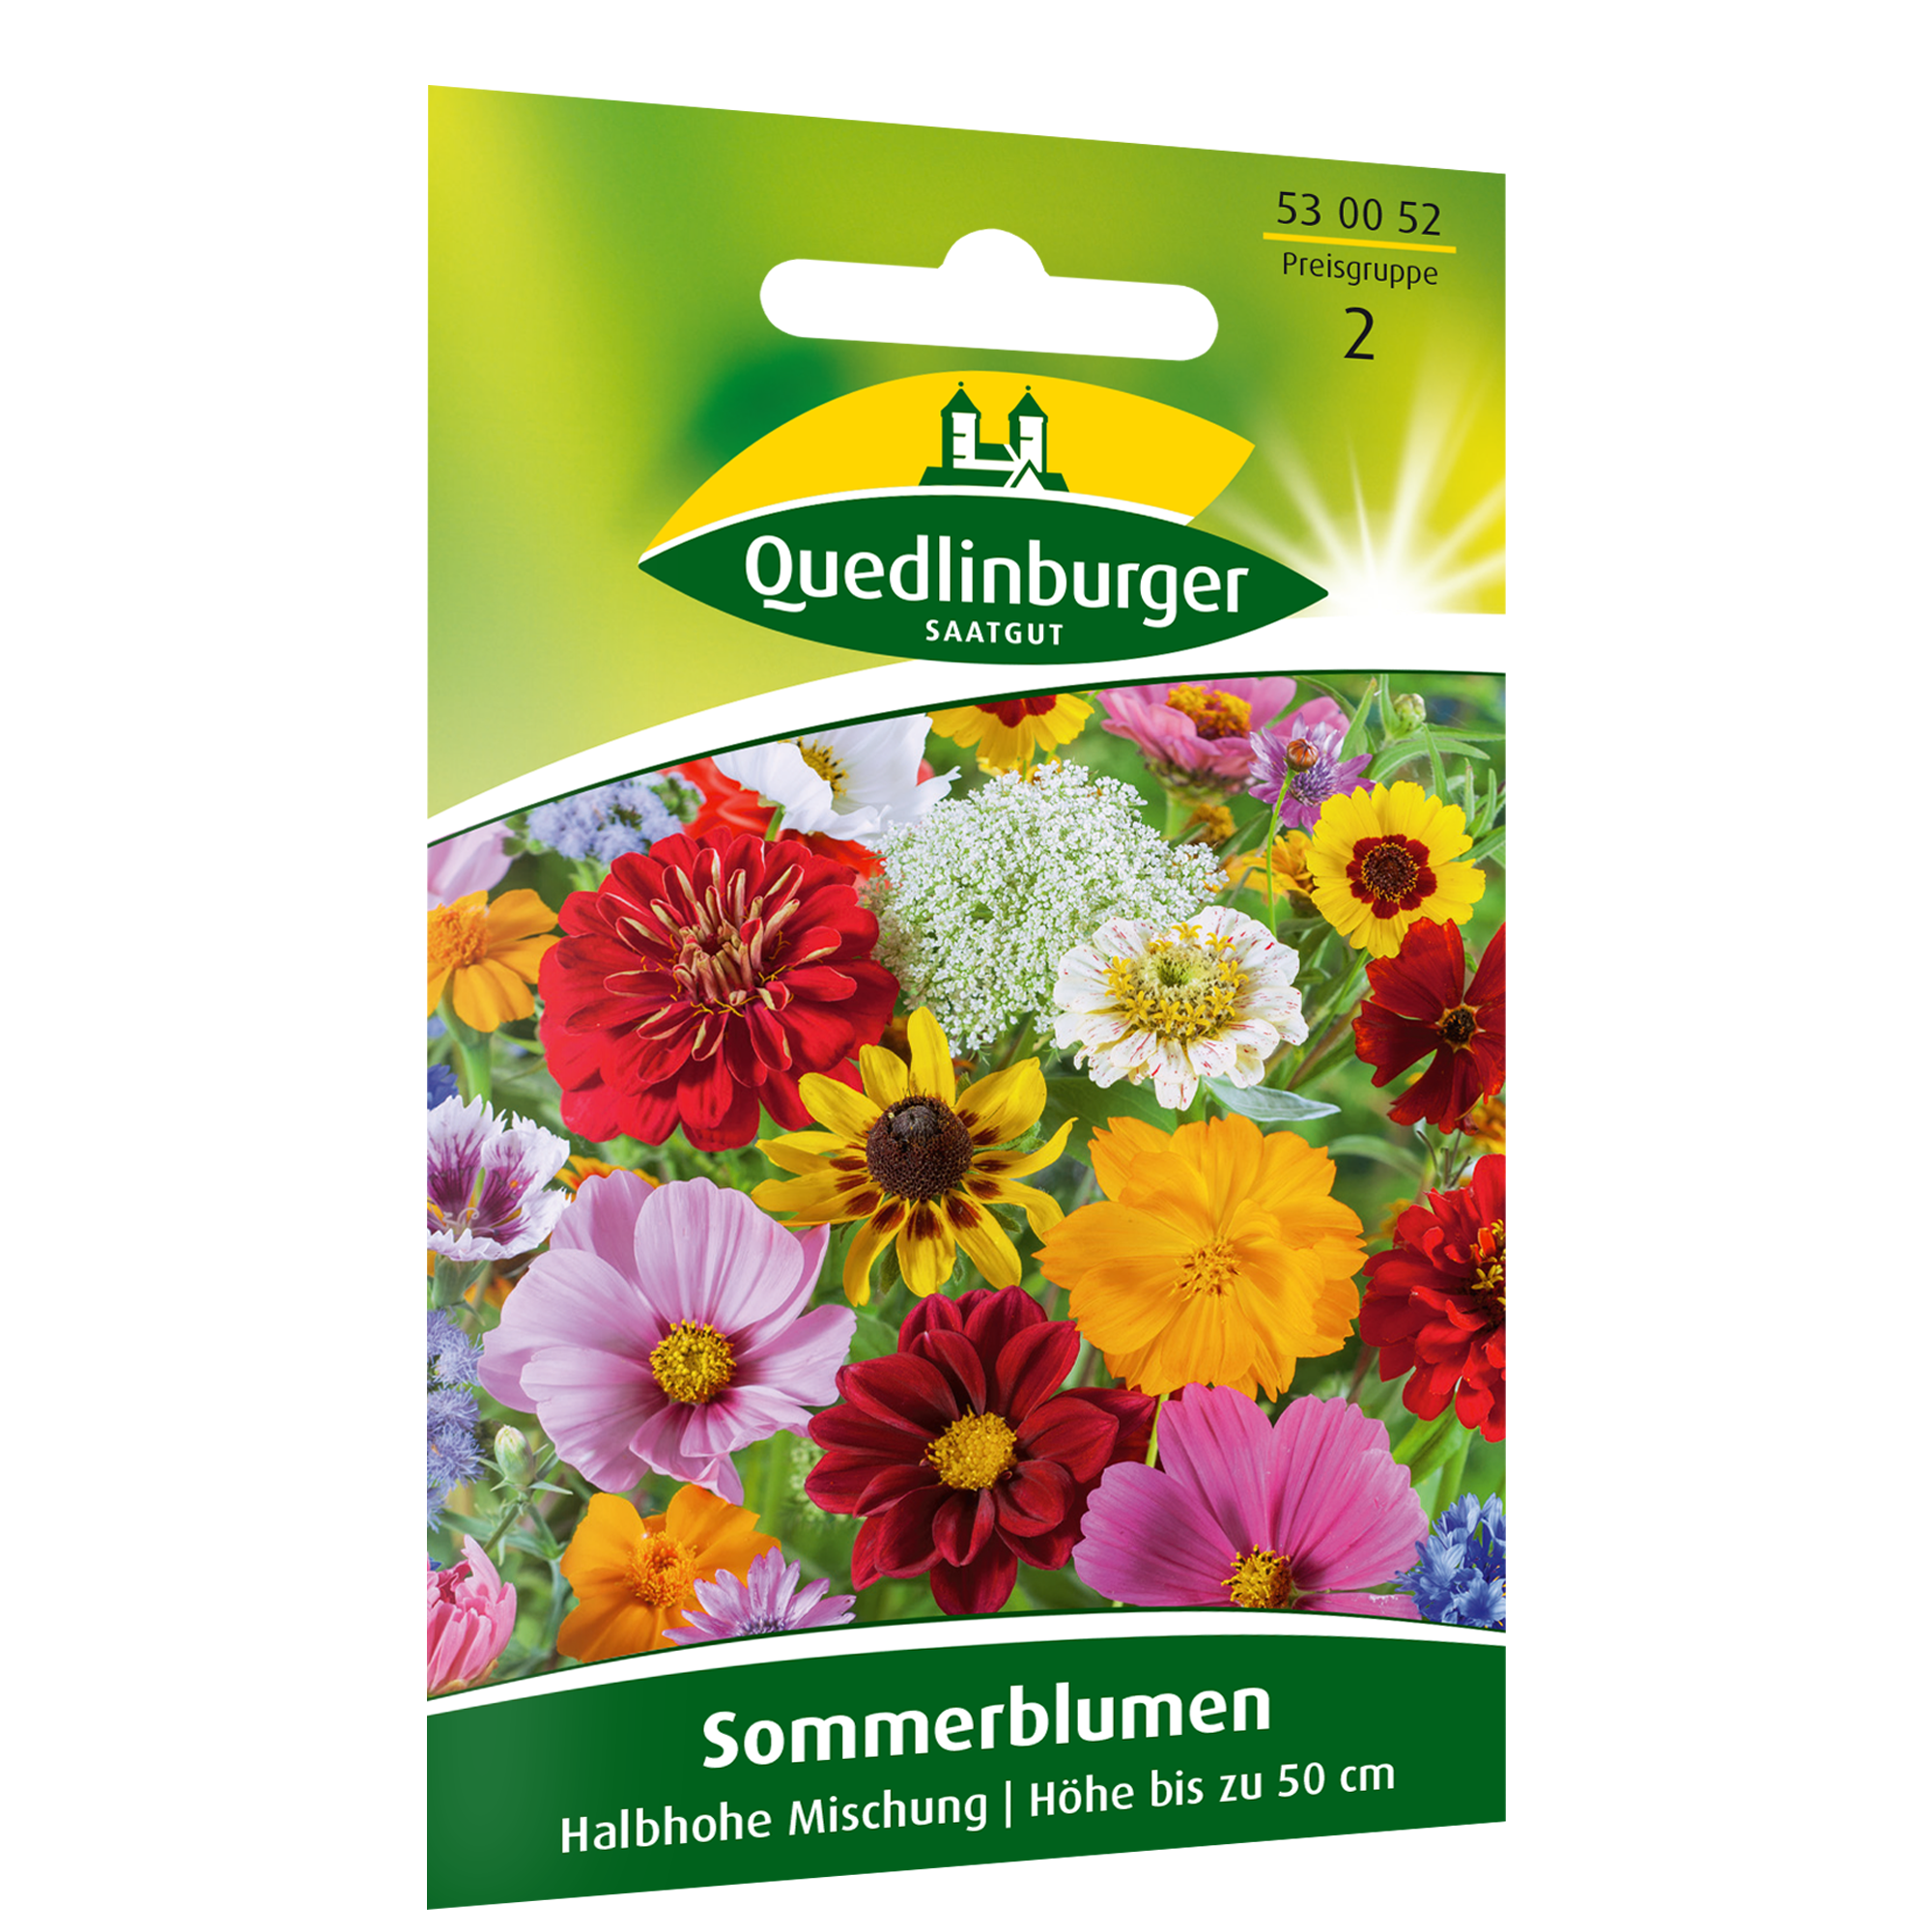 Sommerblumen halbhohe Sorten, Mischung + product picture